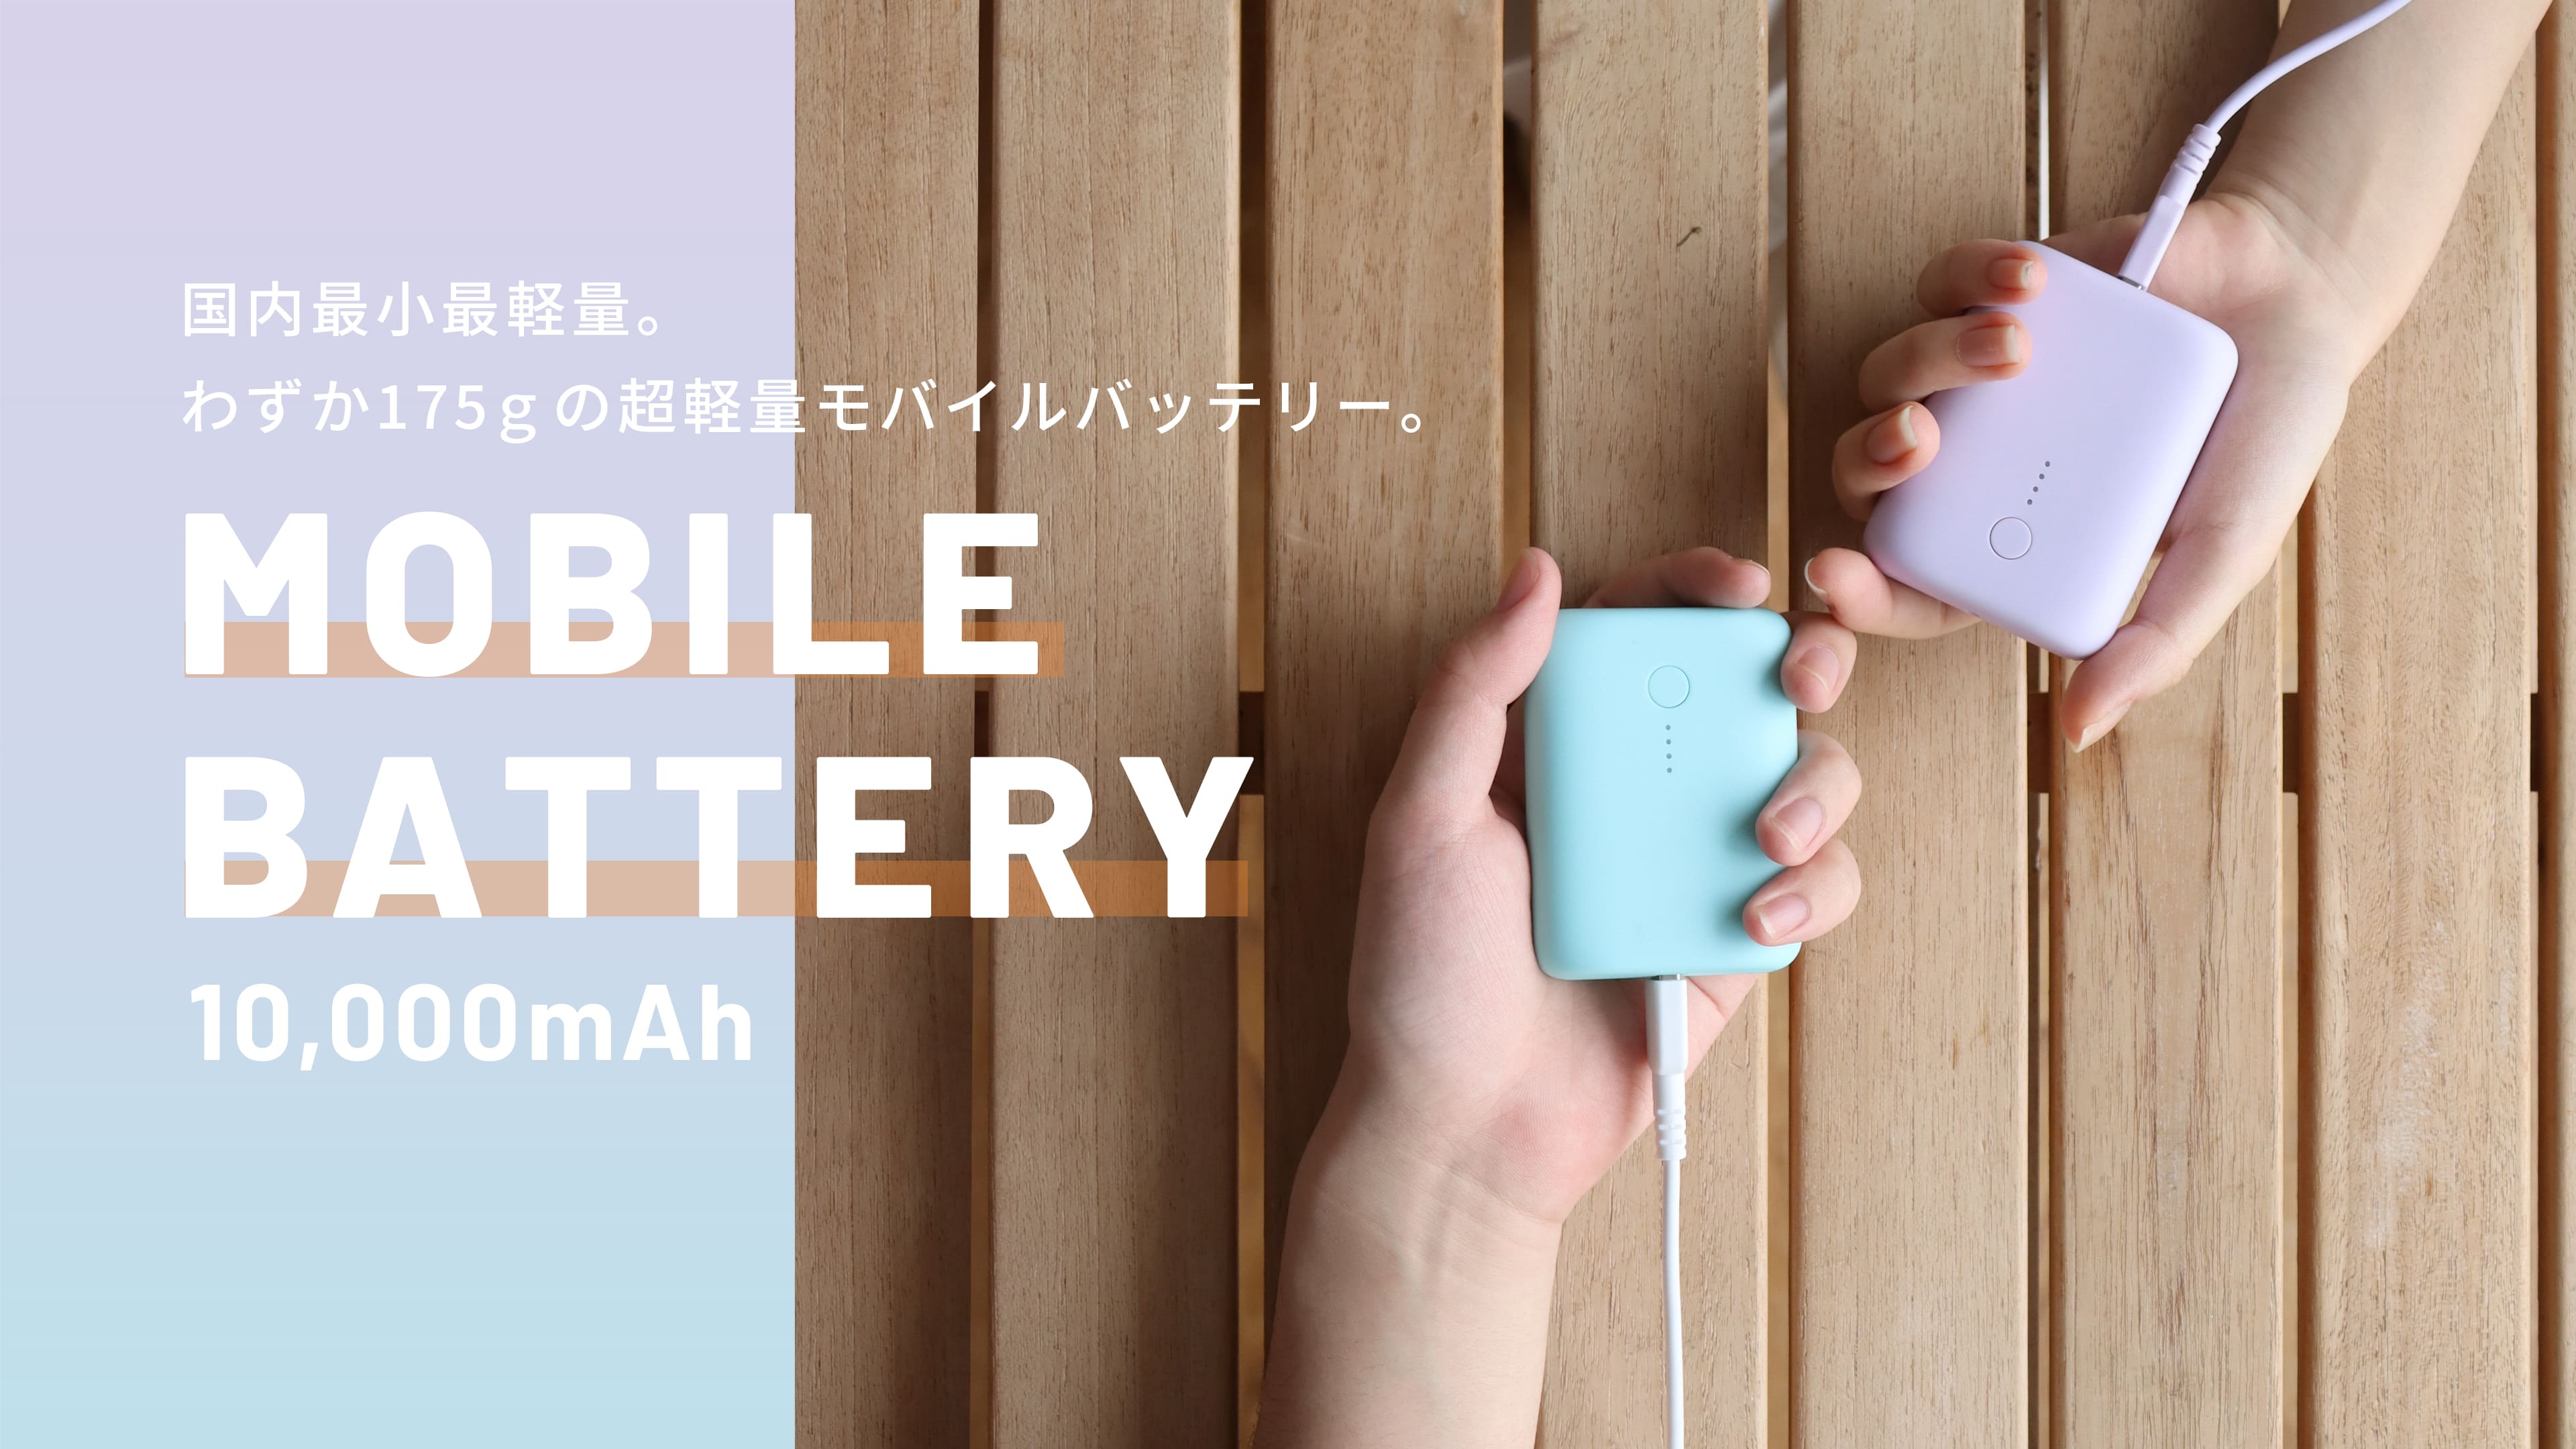 5☆大好評 MOTTERU 国内最小最軽量 モバイルバッテリー 大容量10,000